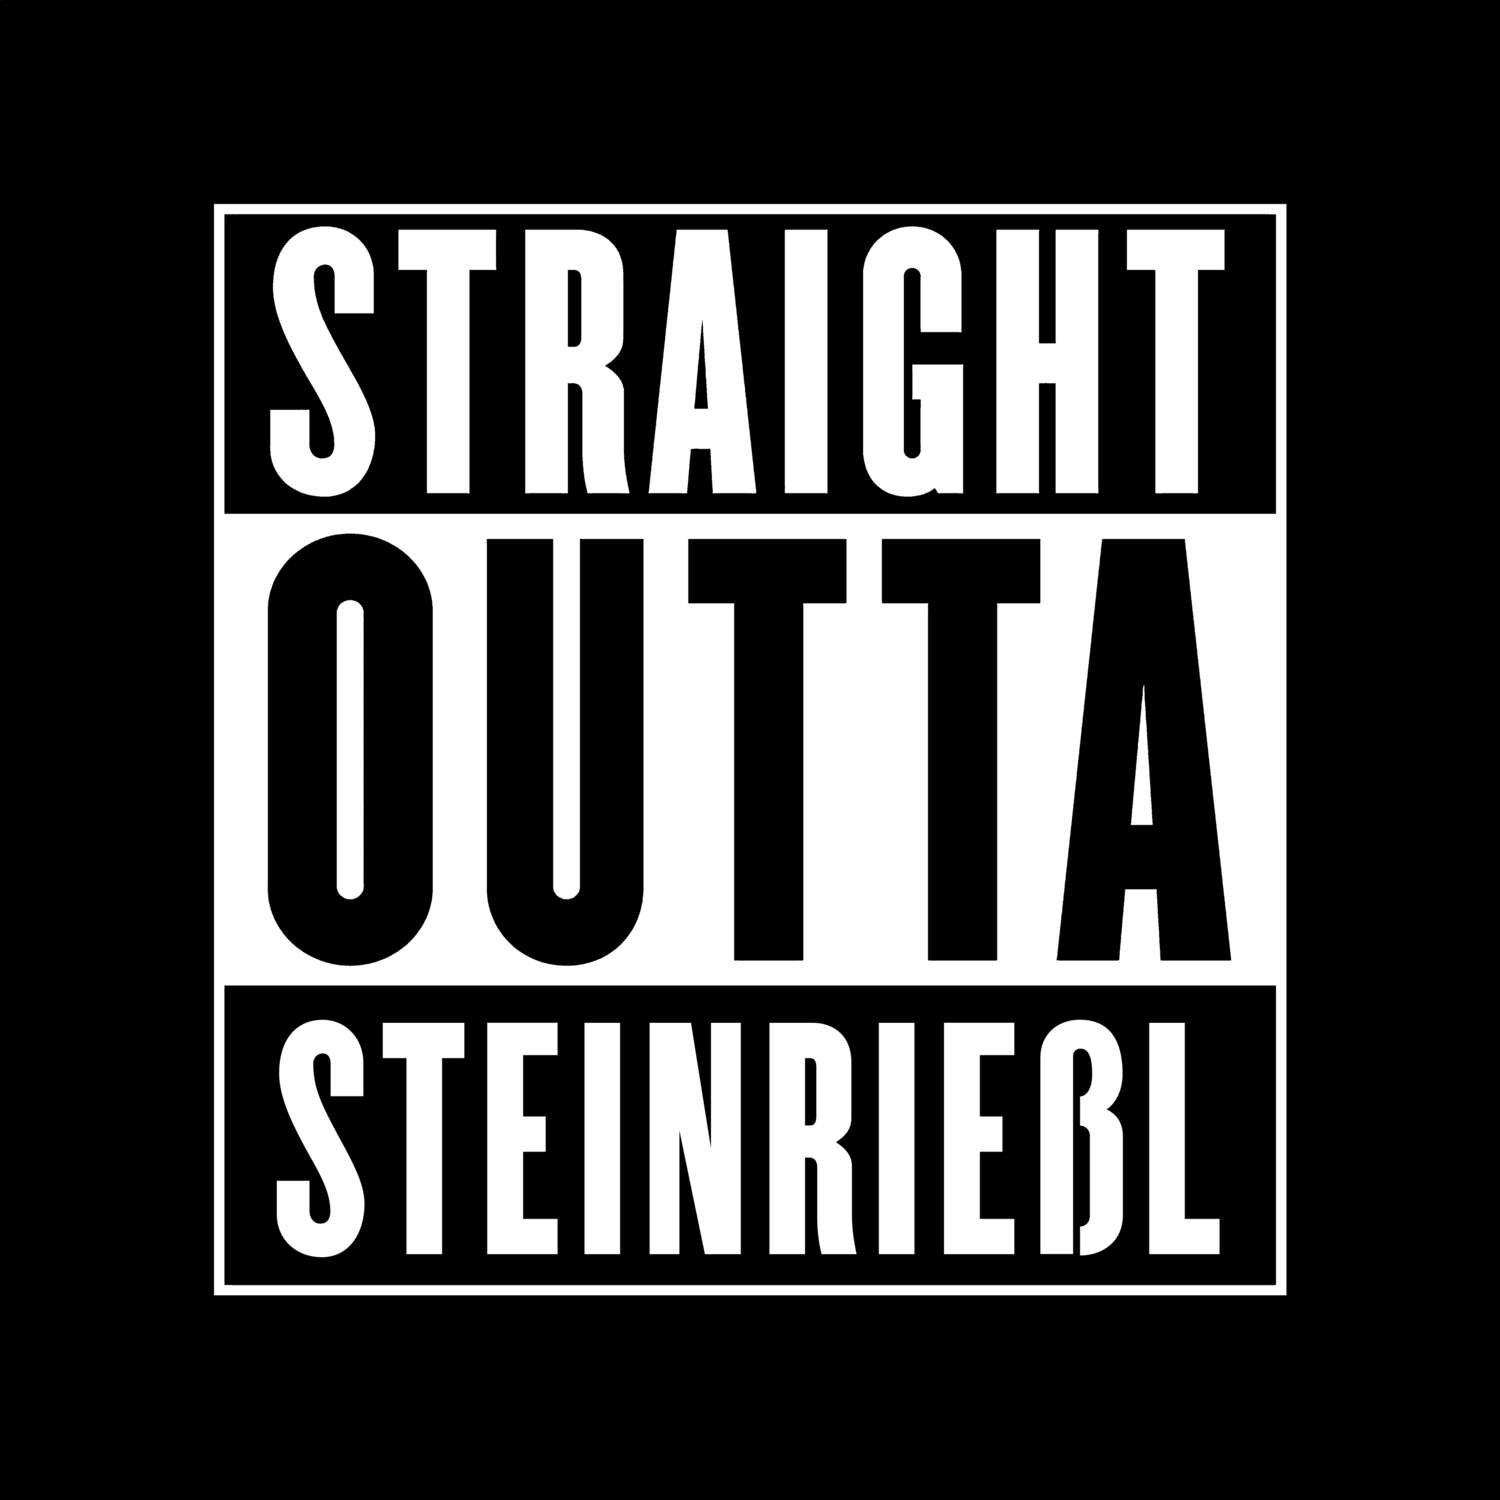 Steinrießl T-Shirt »Straight Outta«